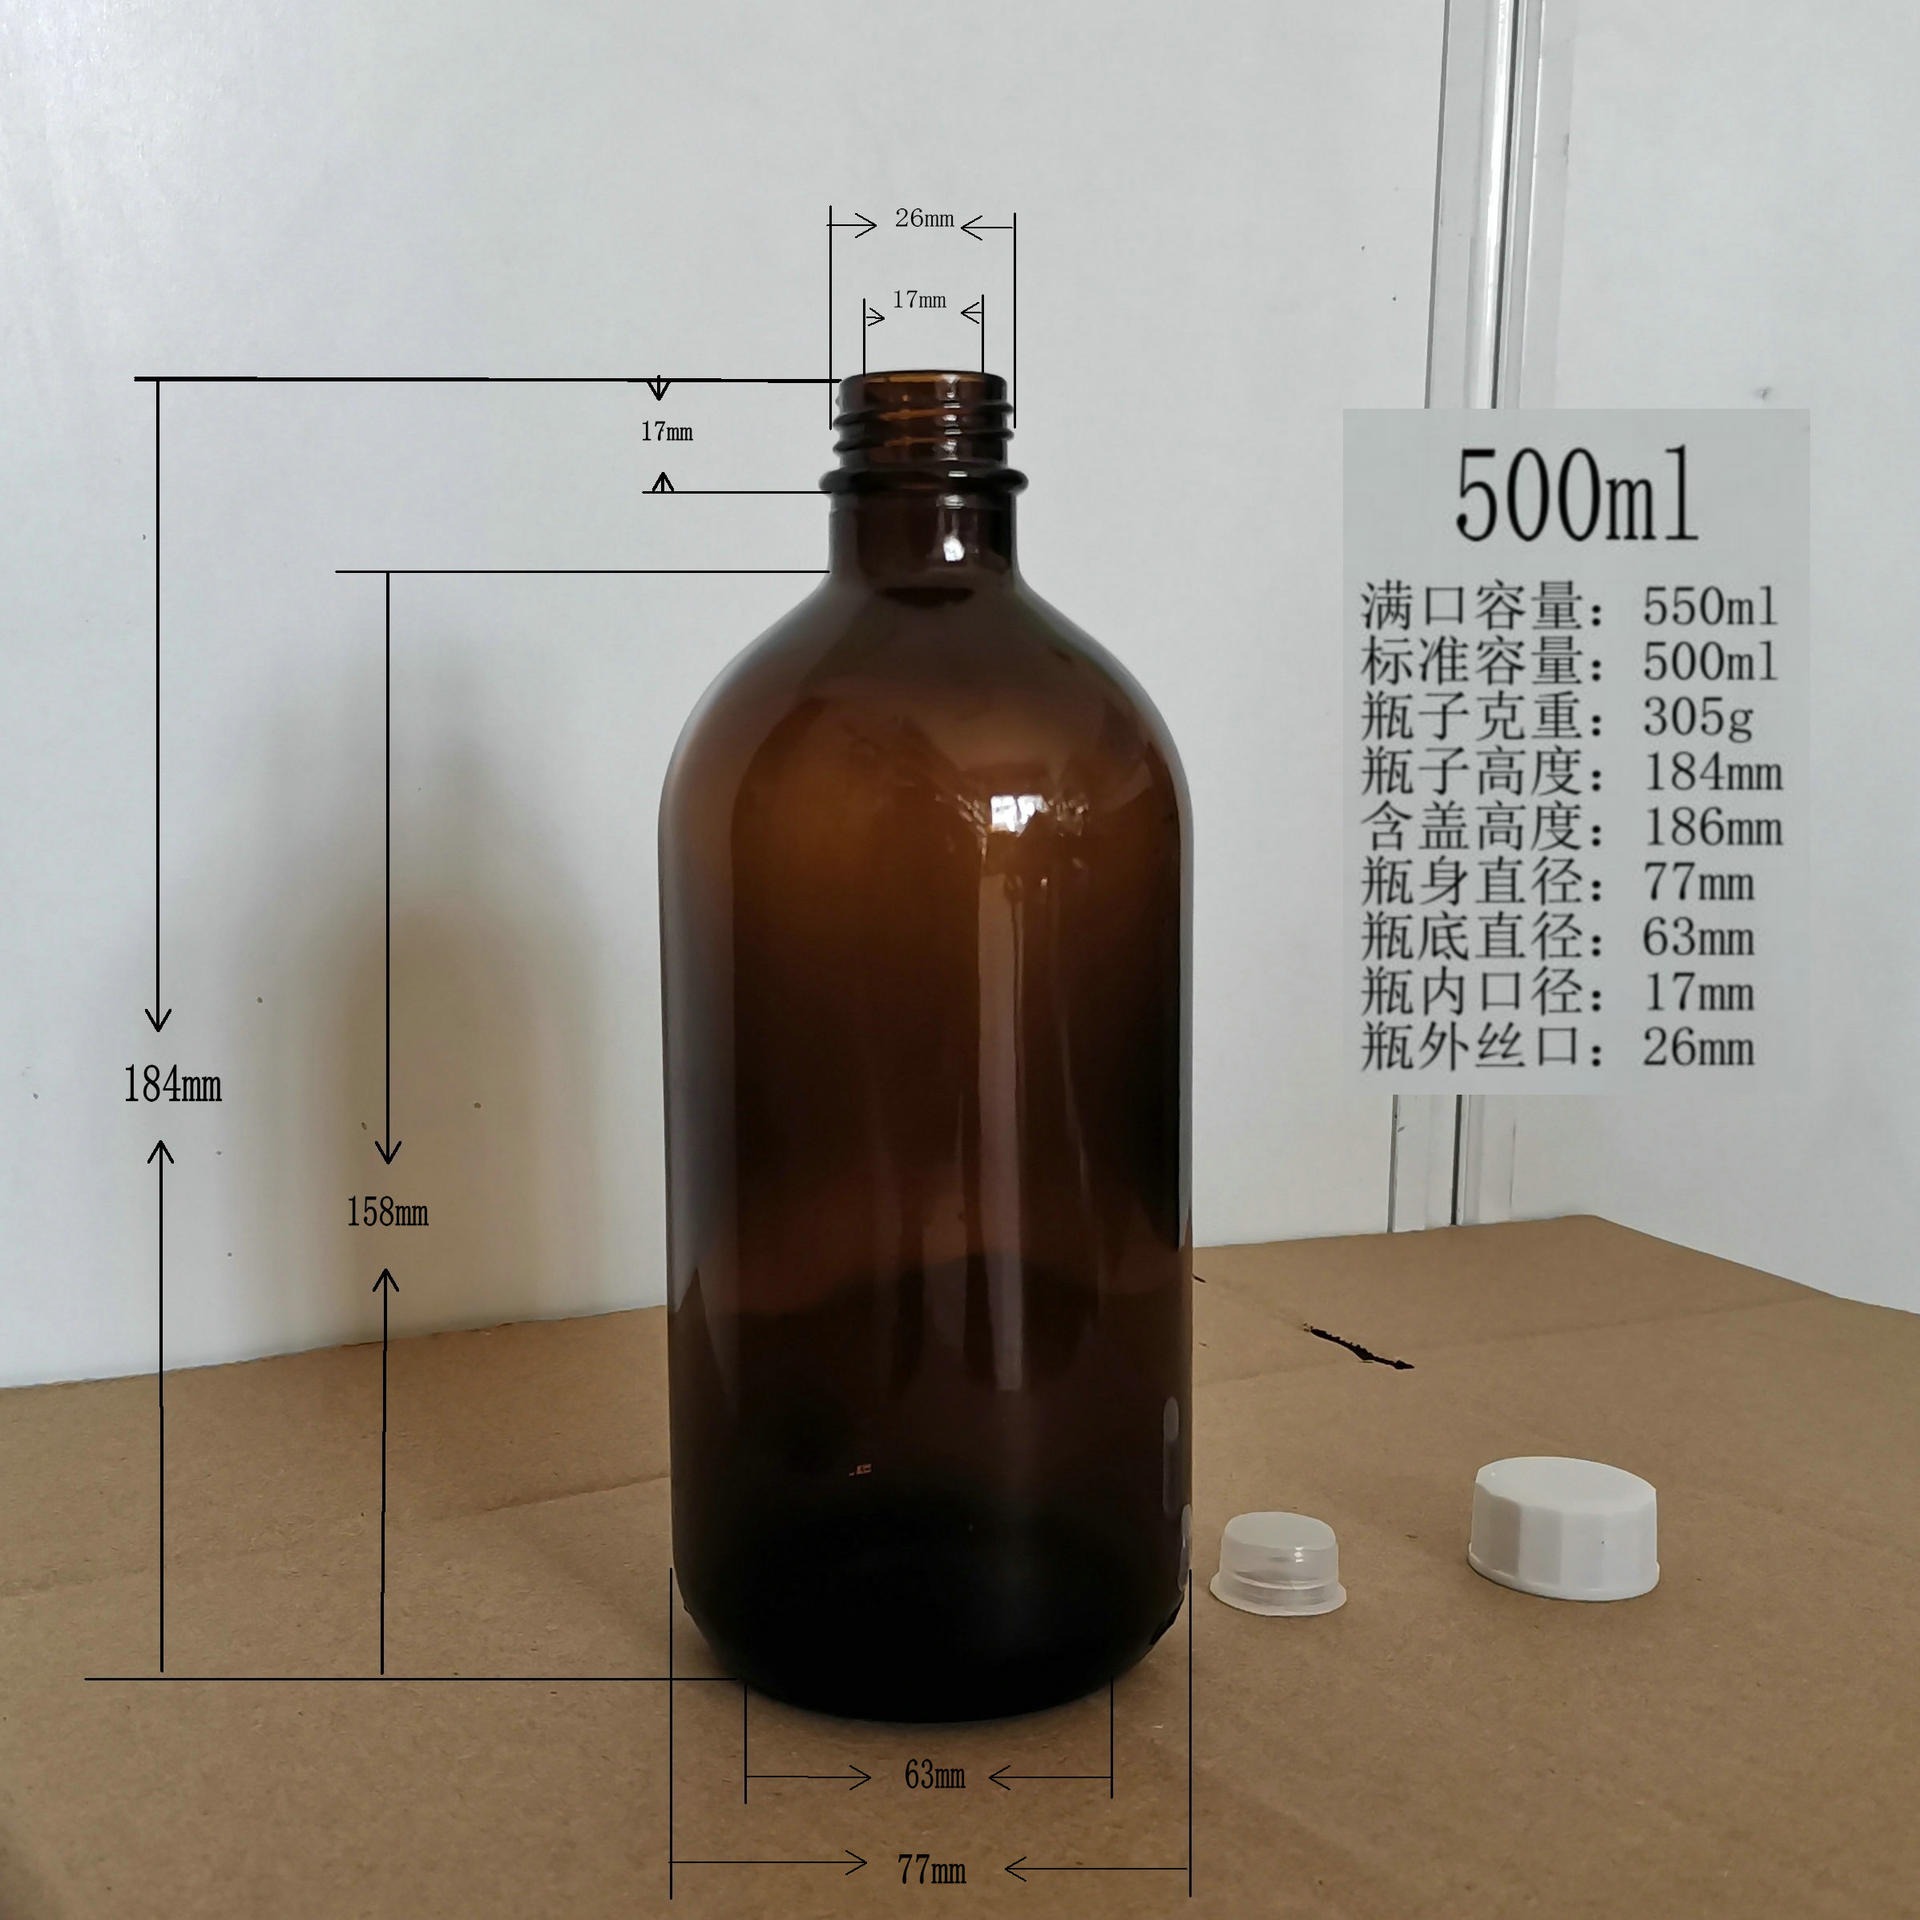 口服液试剂玻璃瓶一斤装生产厂家棕色100ml200ml250ml300ml400ml500ml1000ml茶色玻璃瓶隆安图片